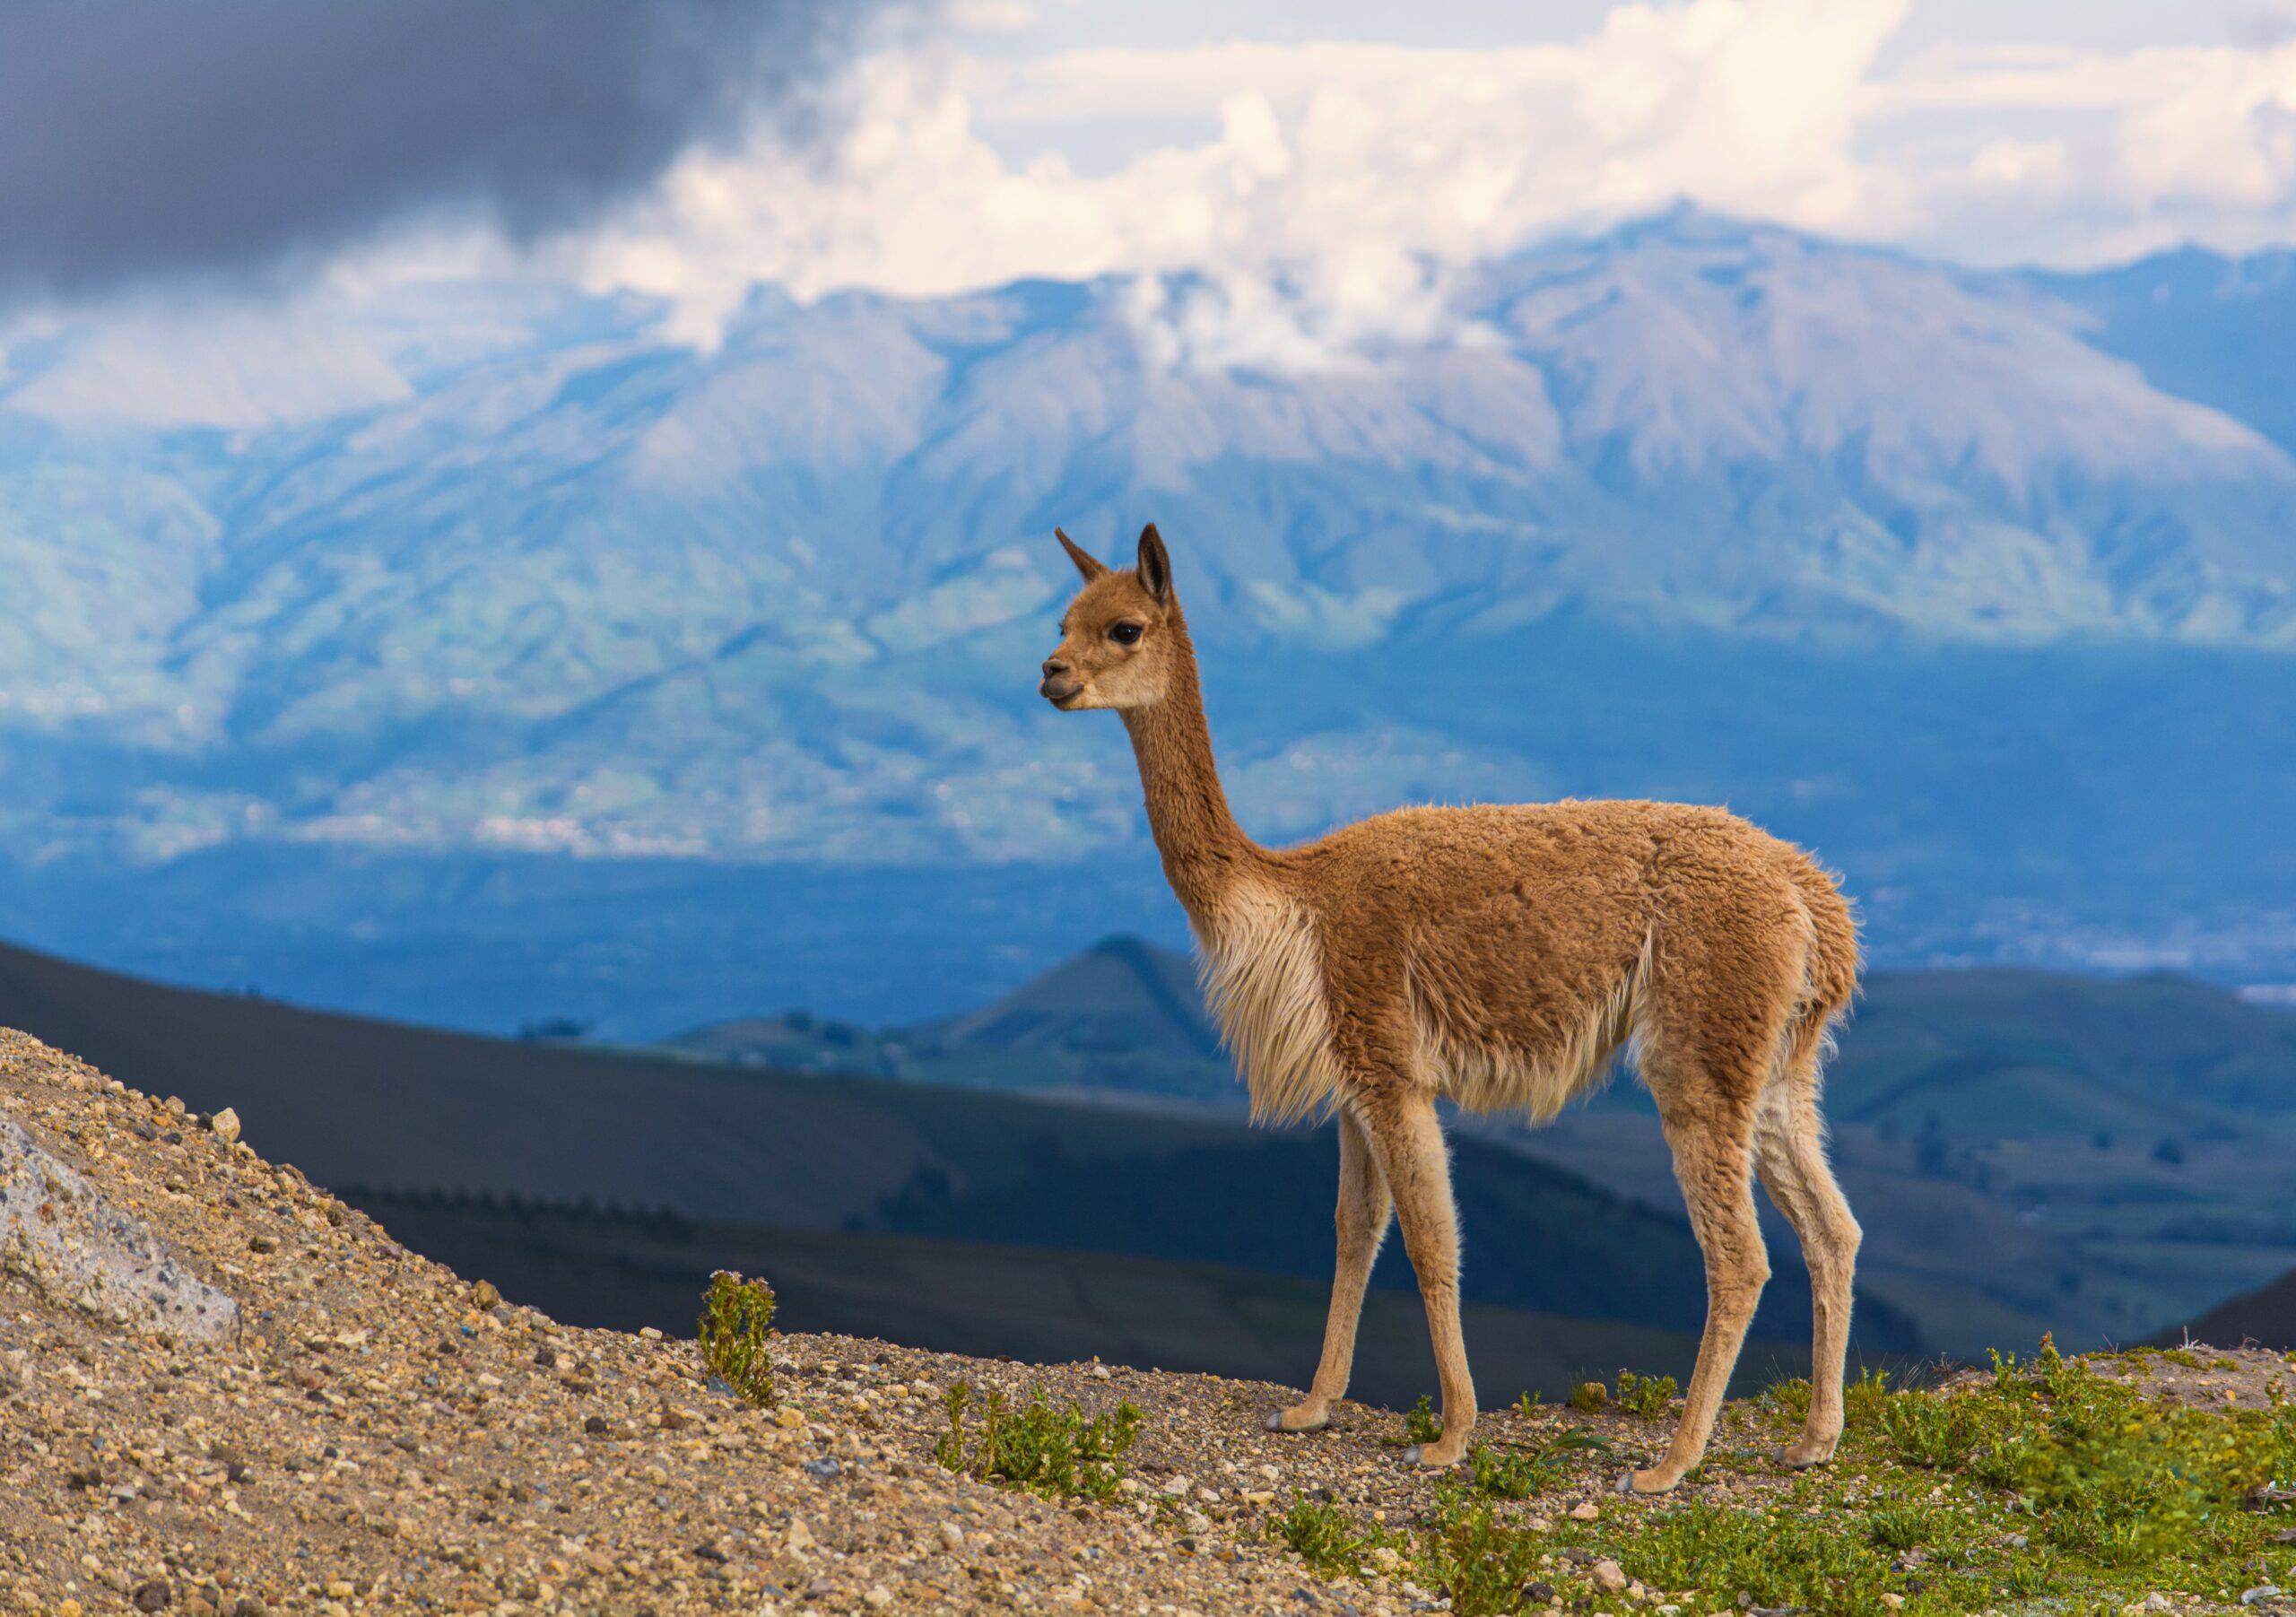 هي واحدة من أشهر الحيوانات التي تعيش في جبال الأنديز